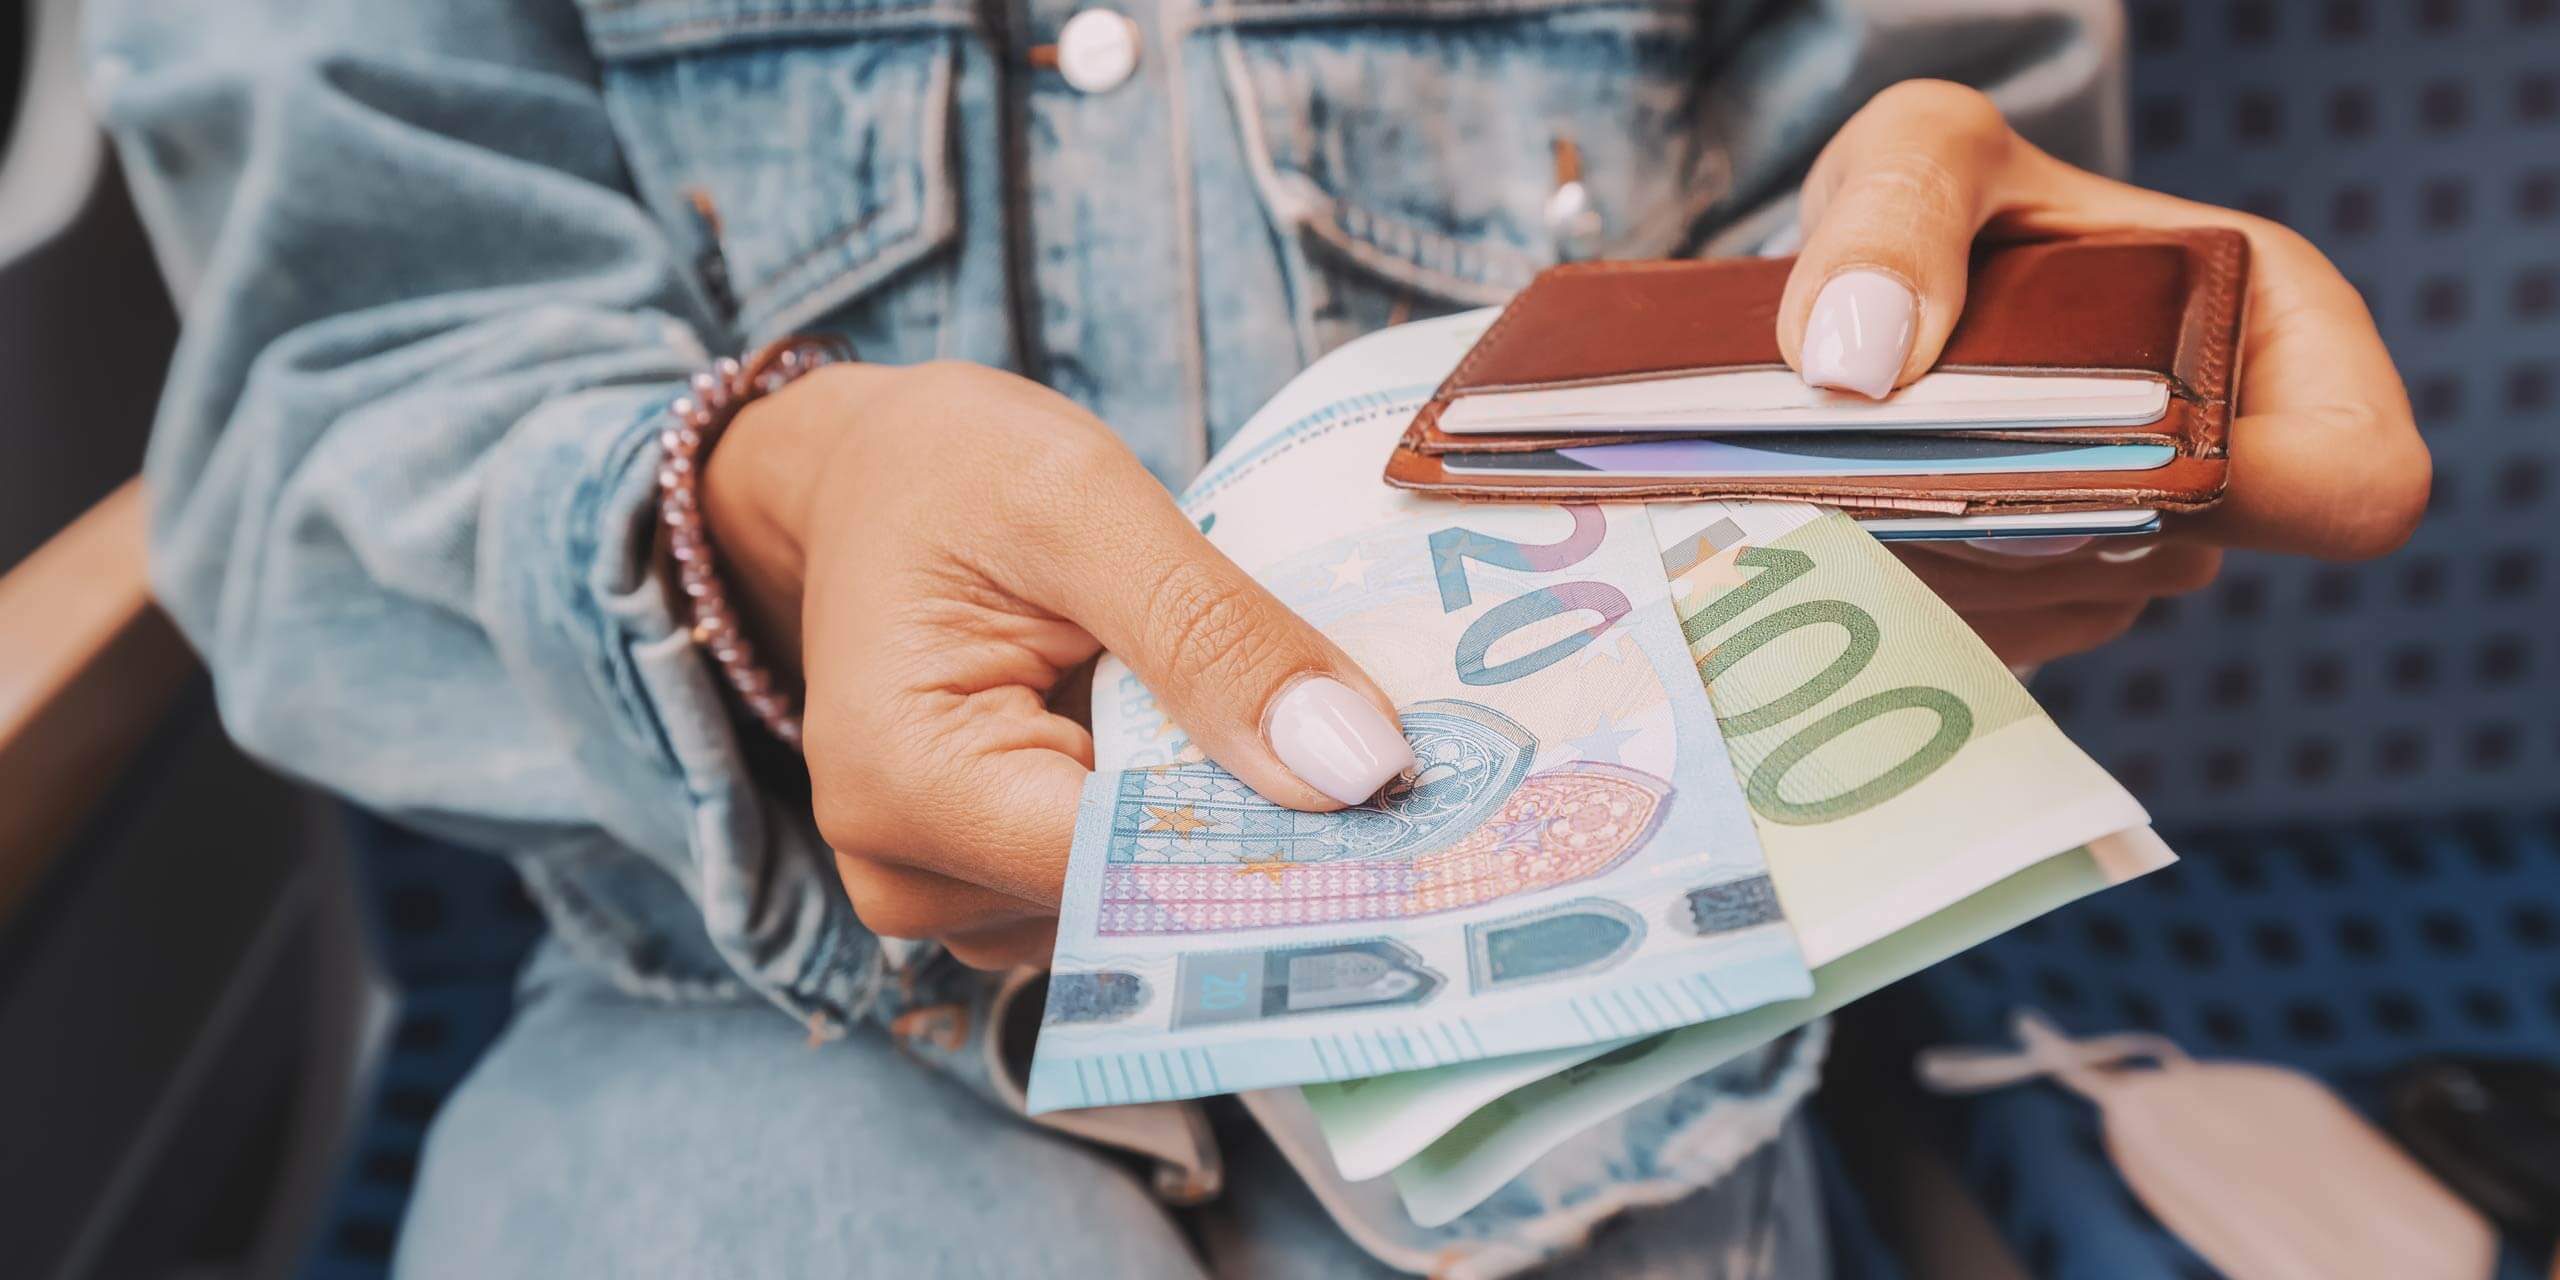 Eine Person in einer Jeansjacke hält in der einen Hand Euro-Banknoten (20 und 100) und in der anderen eine braune Geldbörse. Der Hintergrund ist leicht unscharf.